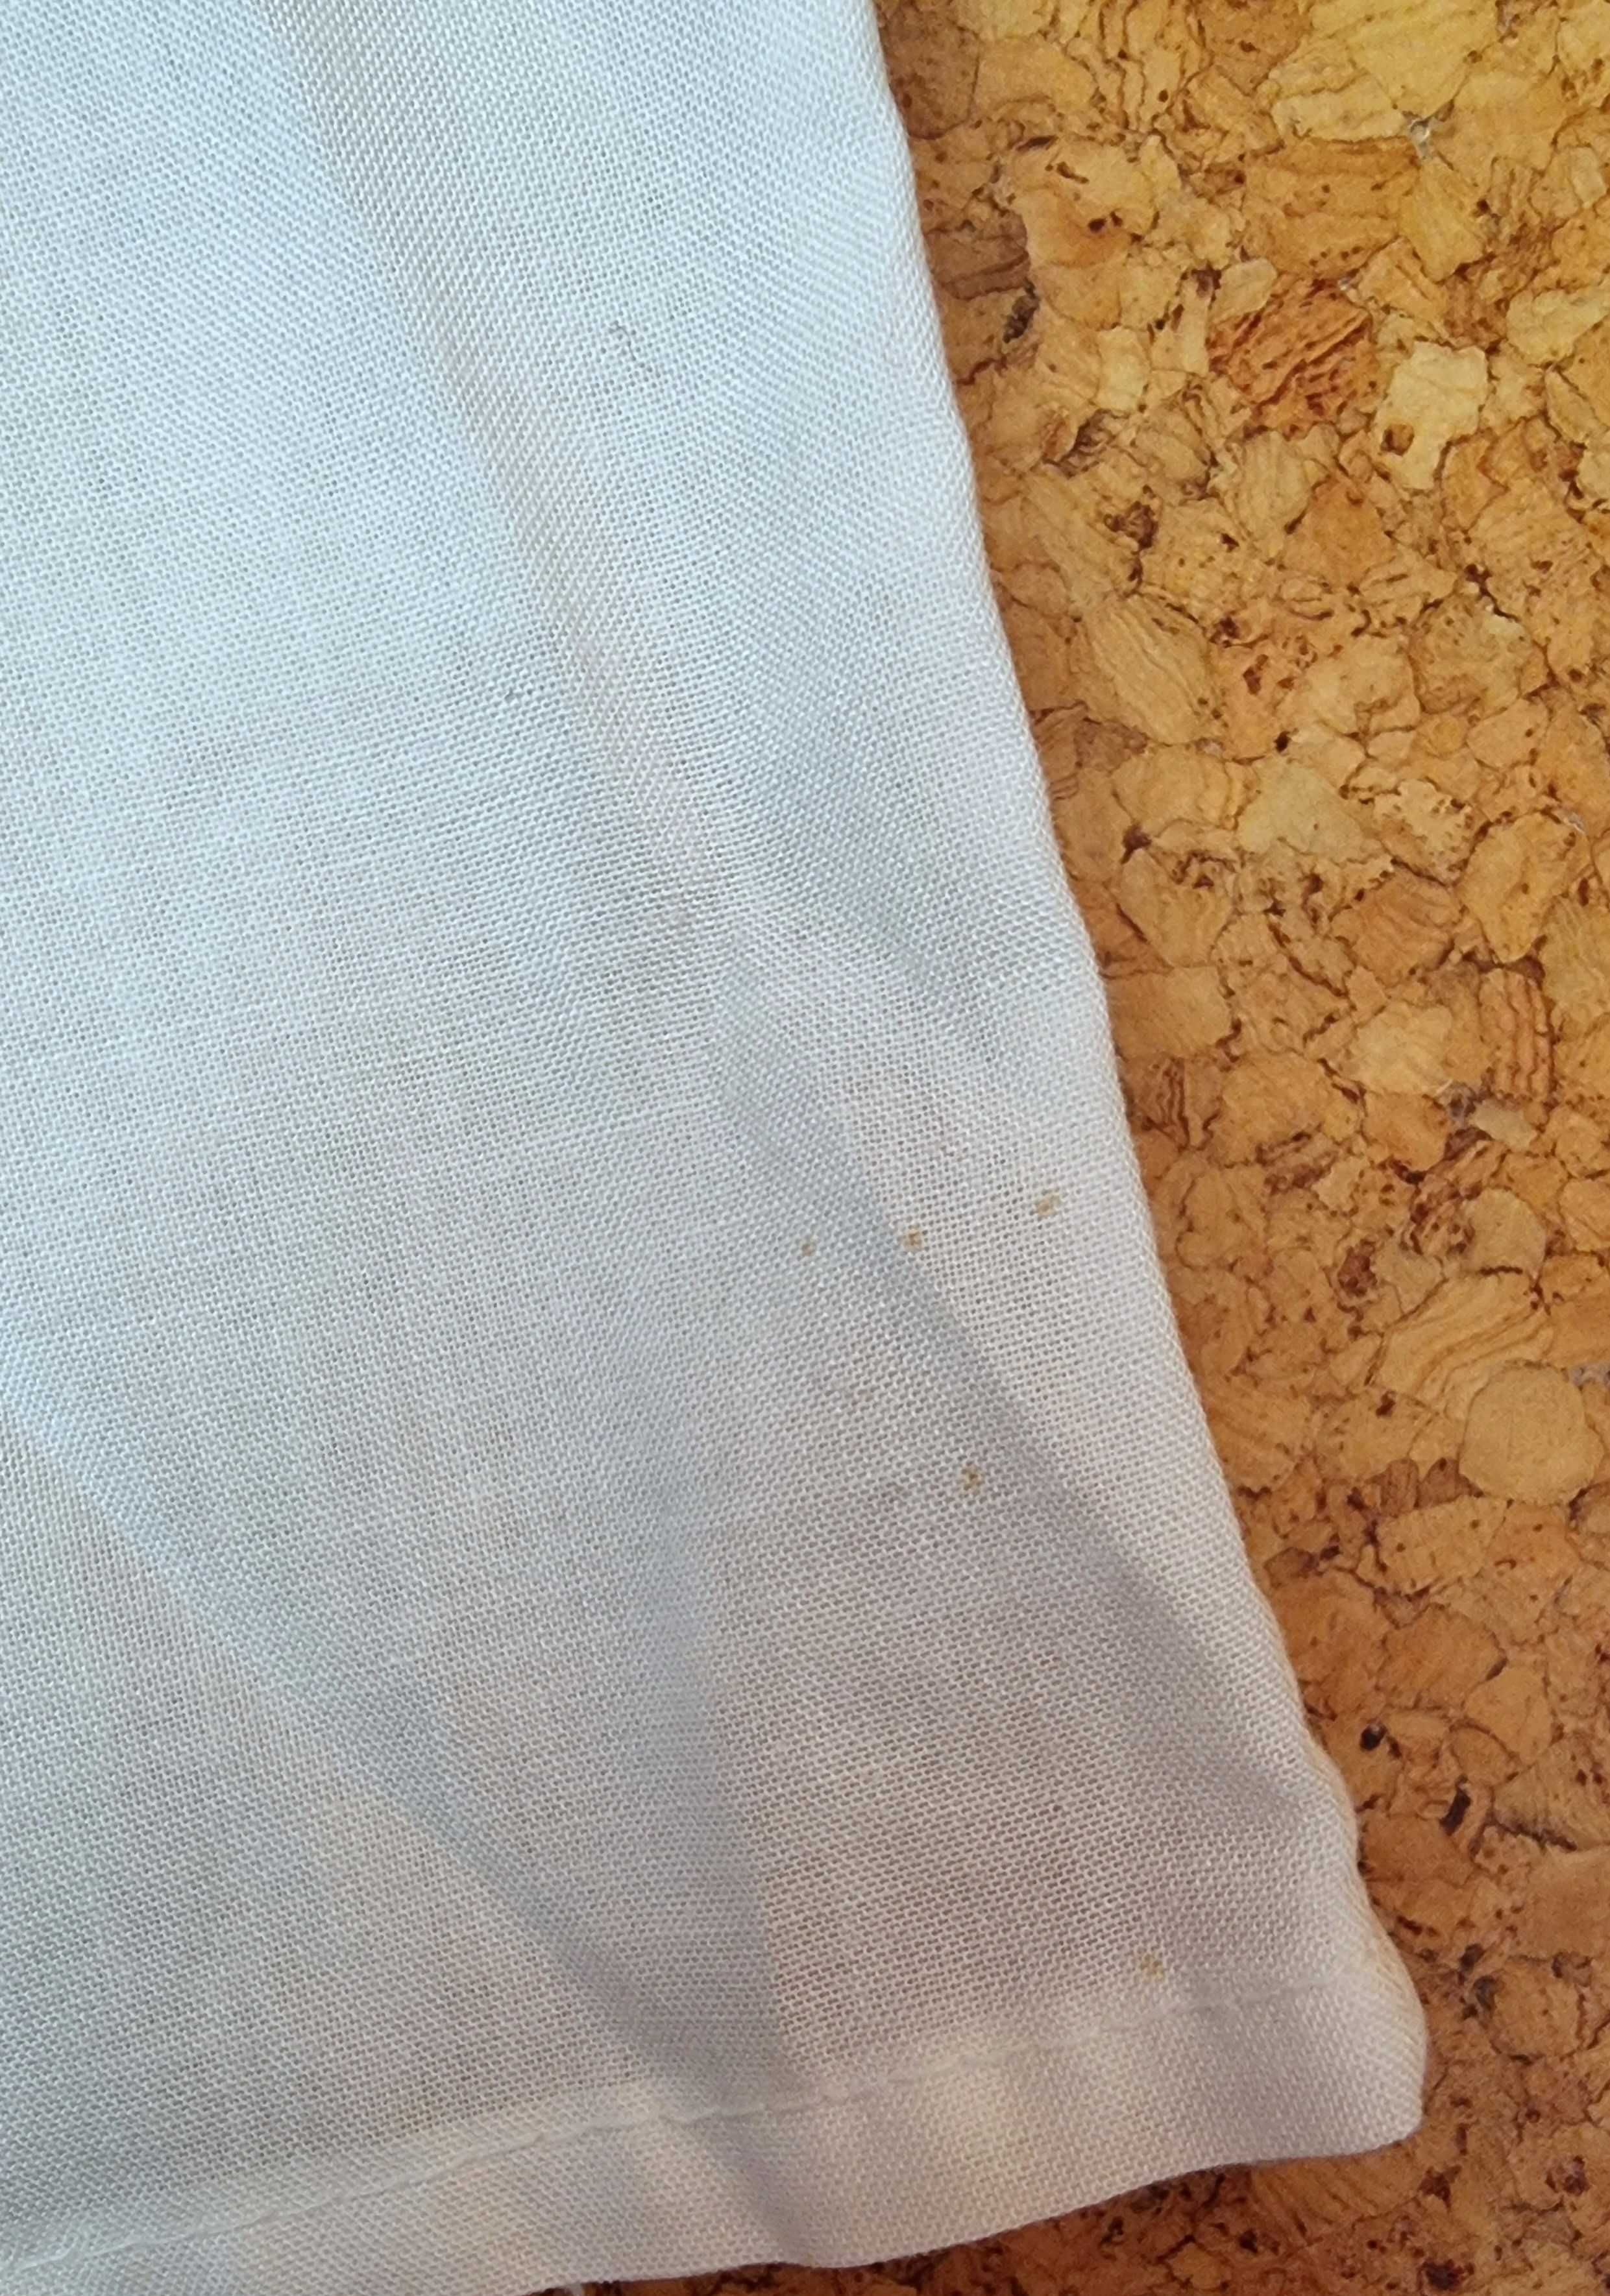 Camisa de manga curta branca com detalhes azuis Zé-Zi, 3 anos